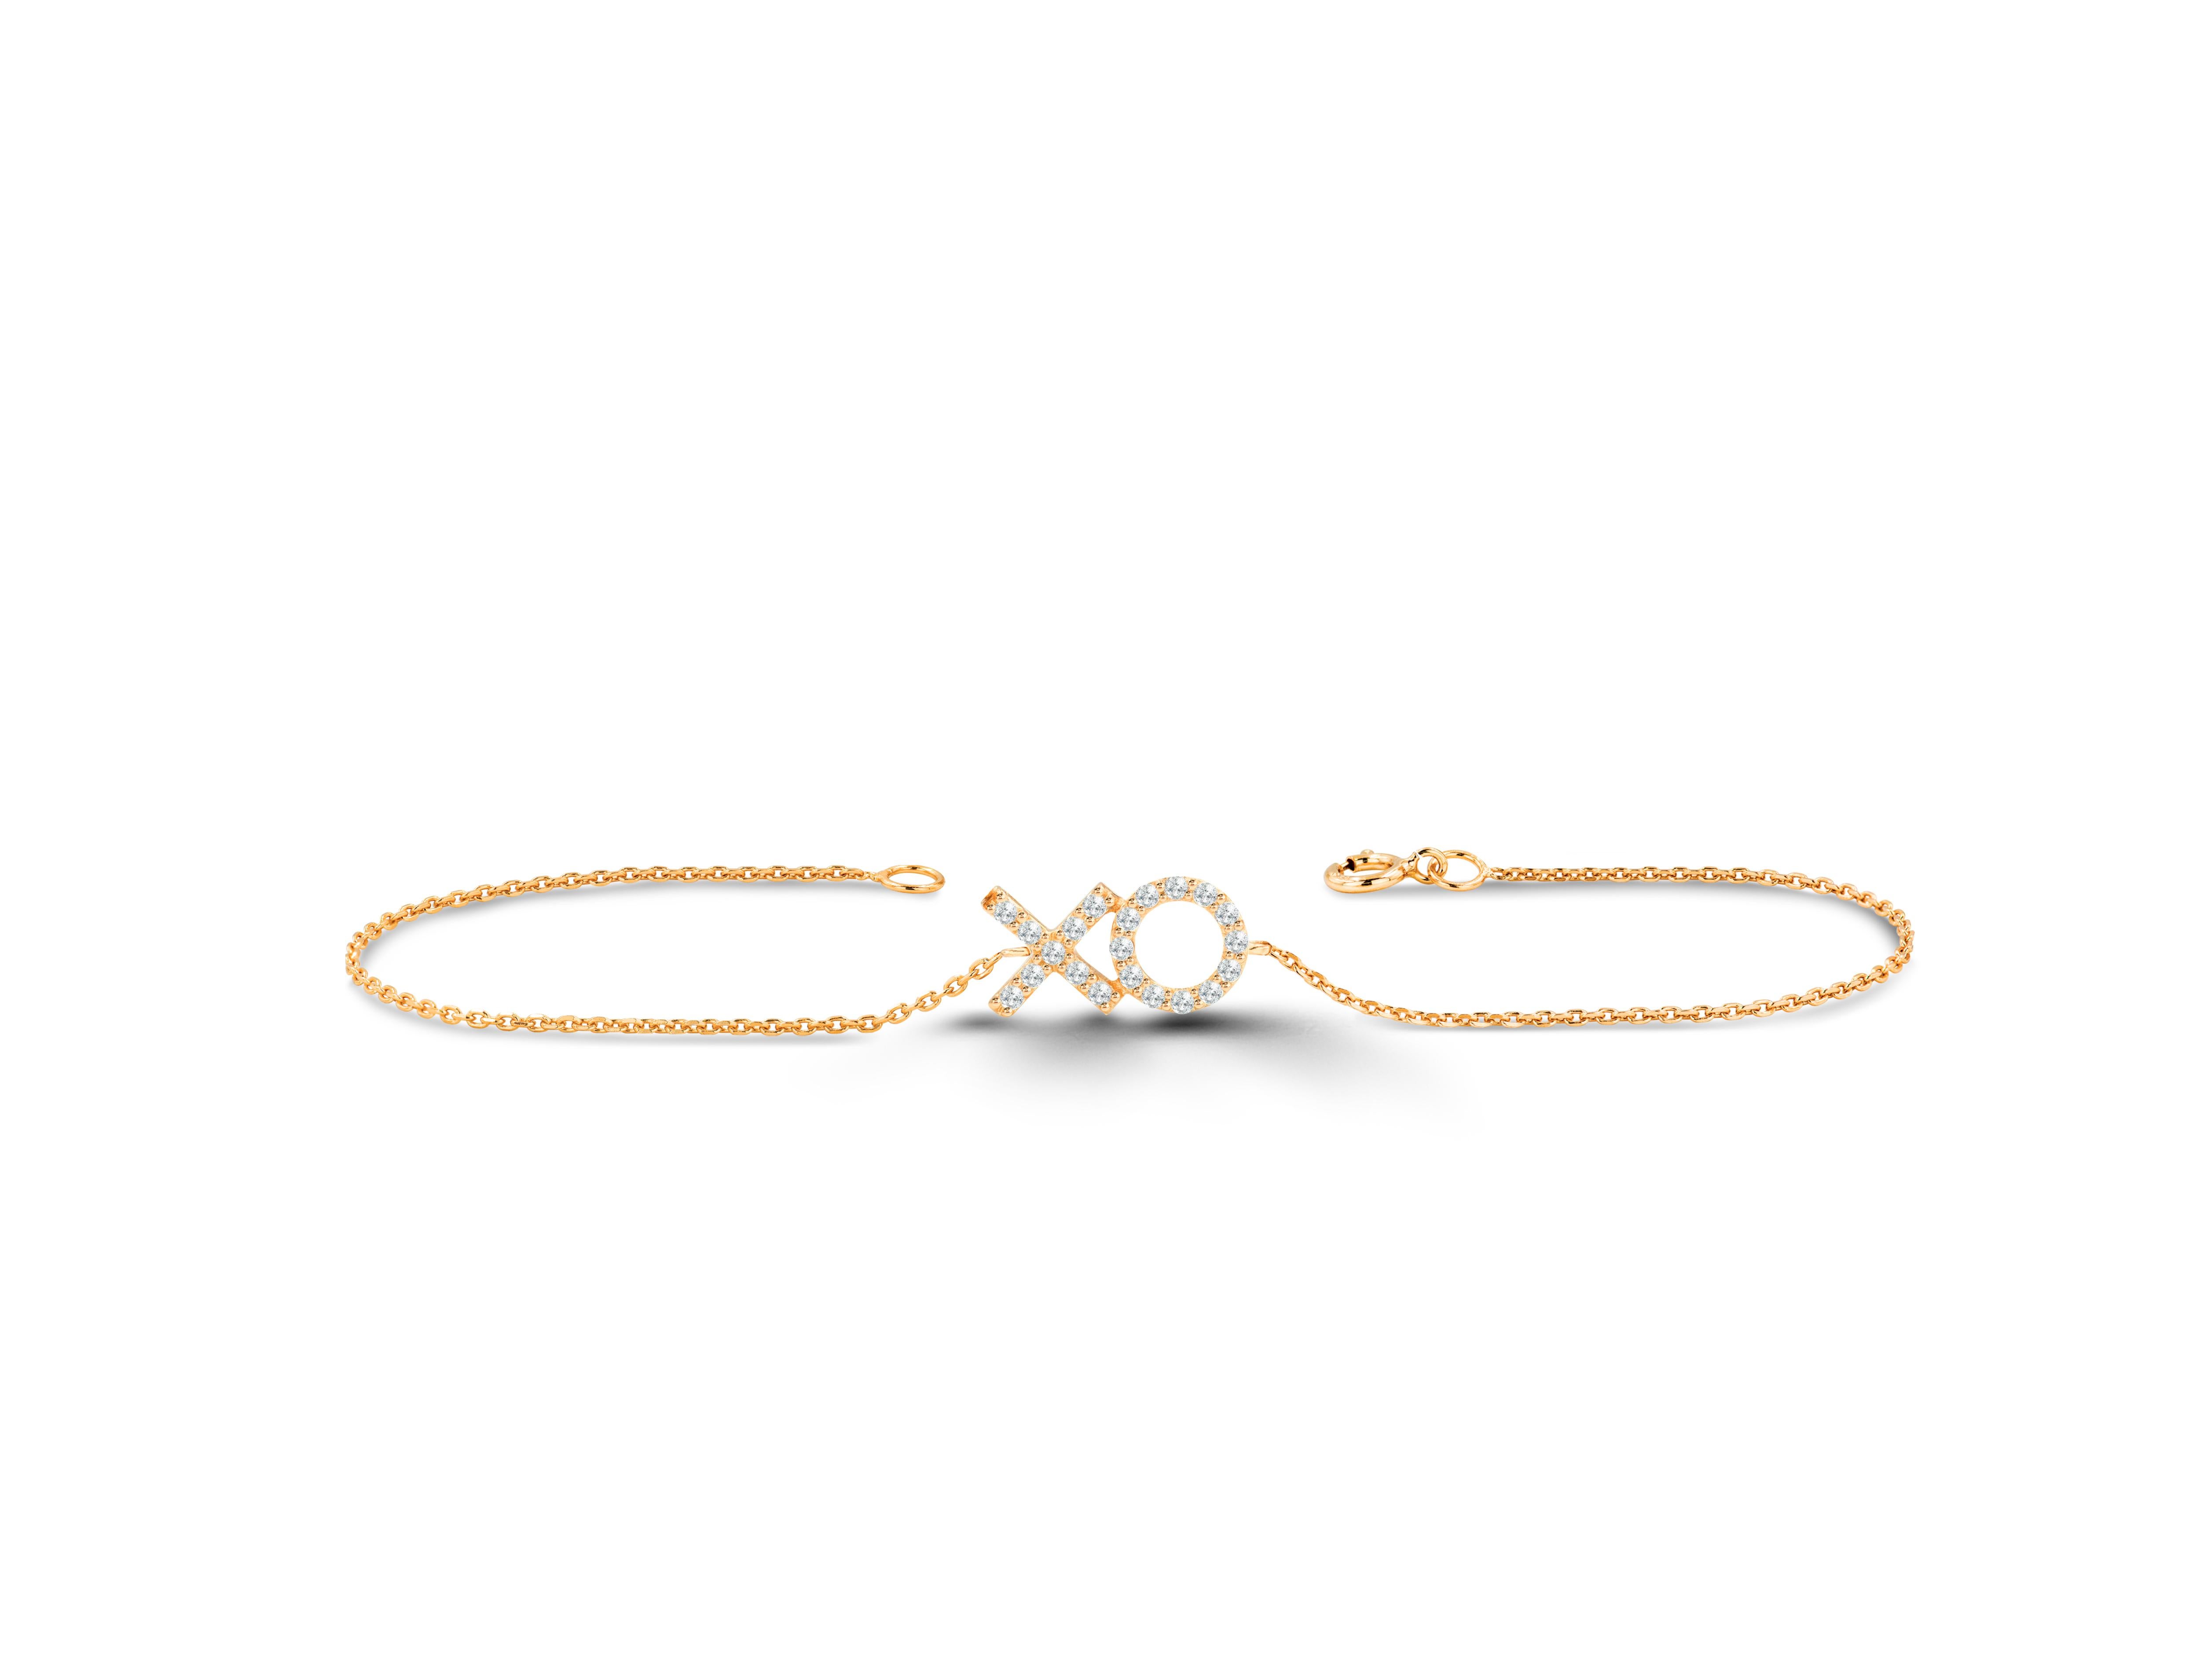 Das schöne und elegante Armband XO XO ist ein perfektes Geschenk für Ihre beste Freundin. Es ist aus reinem Gold gefertigt und besteht aus echten und natürlichen Diamanten. Dieses minimalistische Armband verleiht Ihrer Hand einen raffinierten und